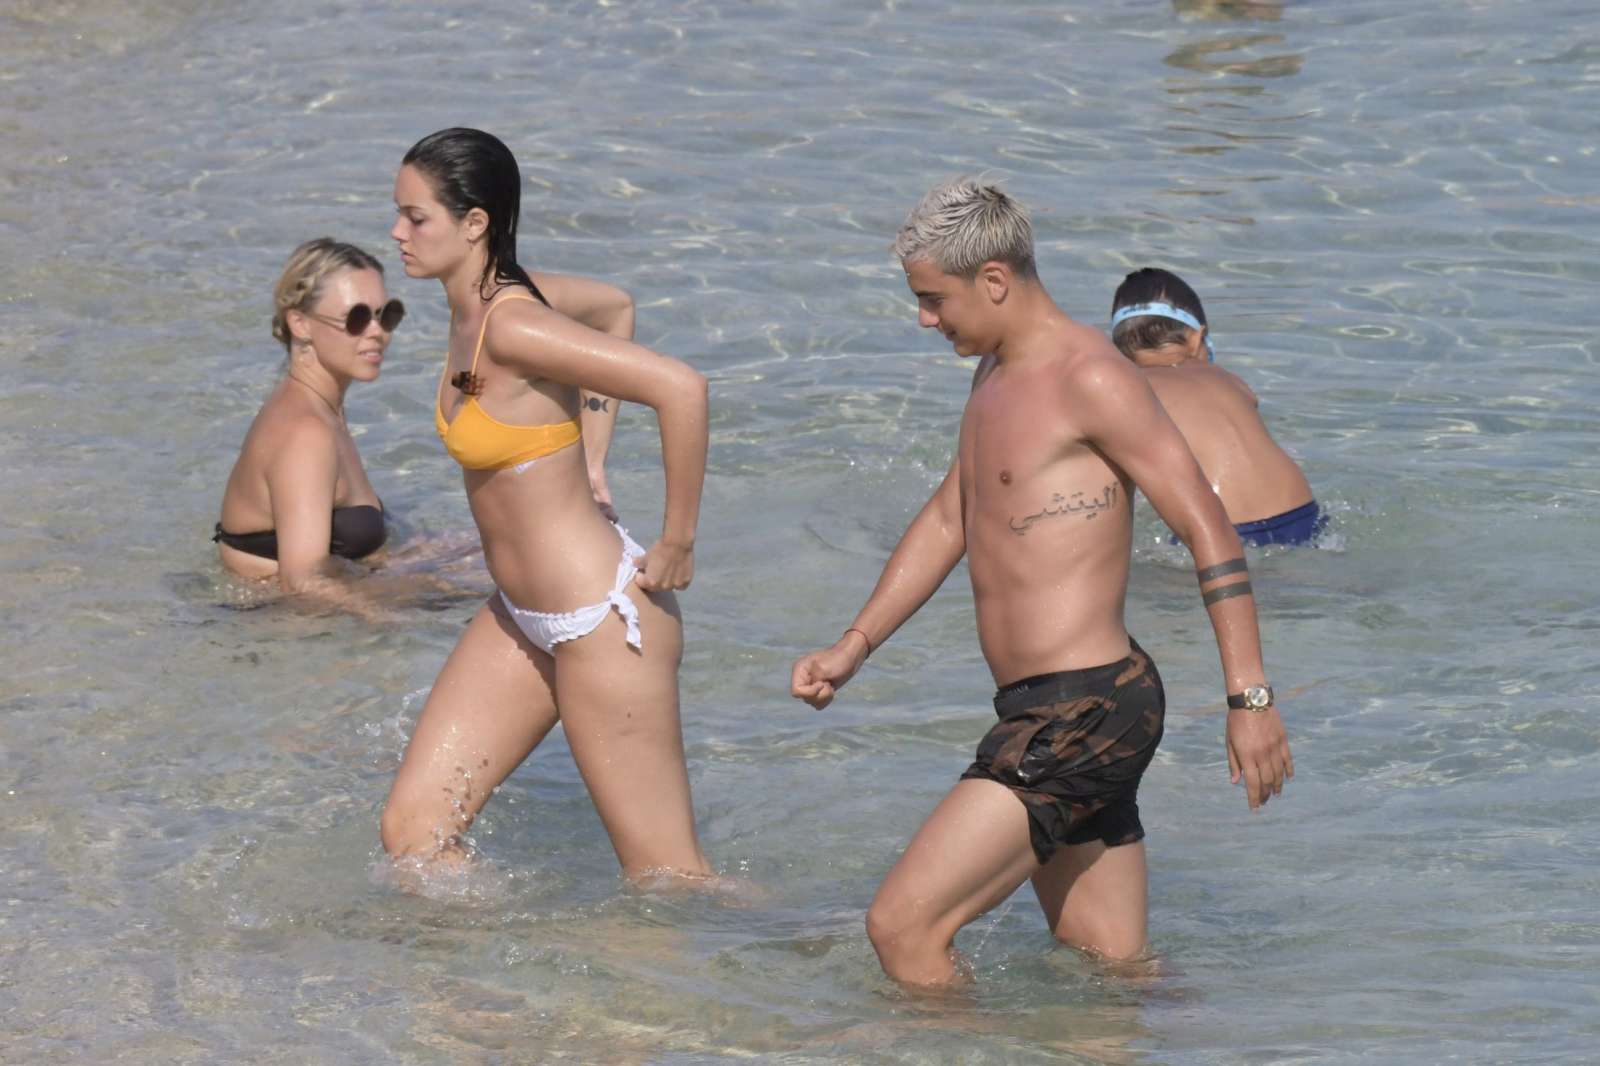 Oriana Sabatini in Bikini at the beach in Mykonos July 28, 2018 63